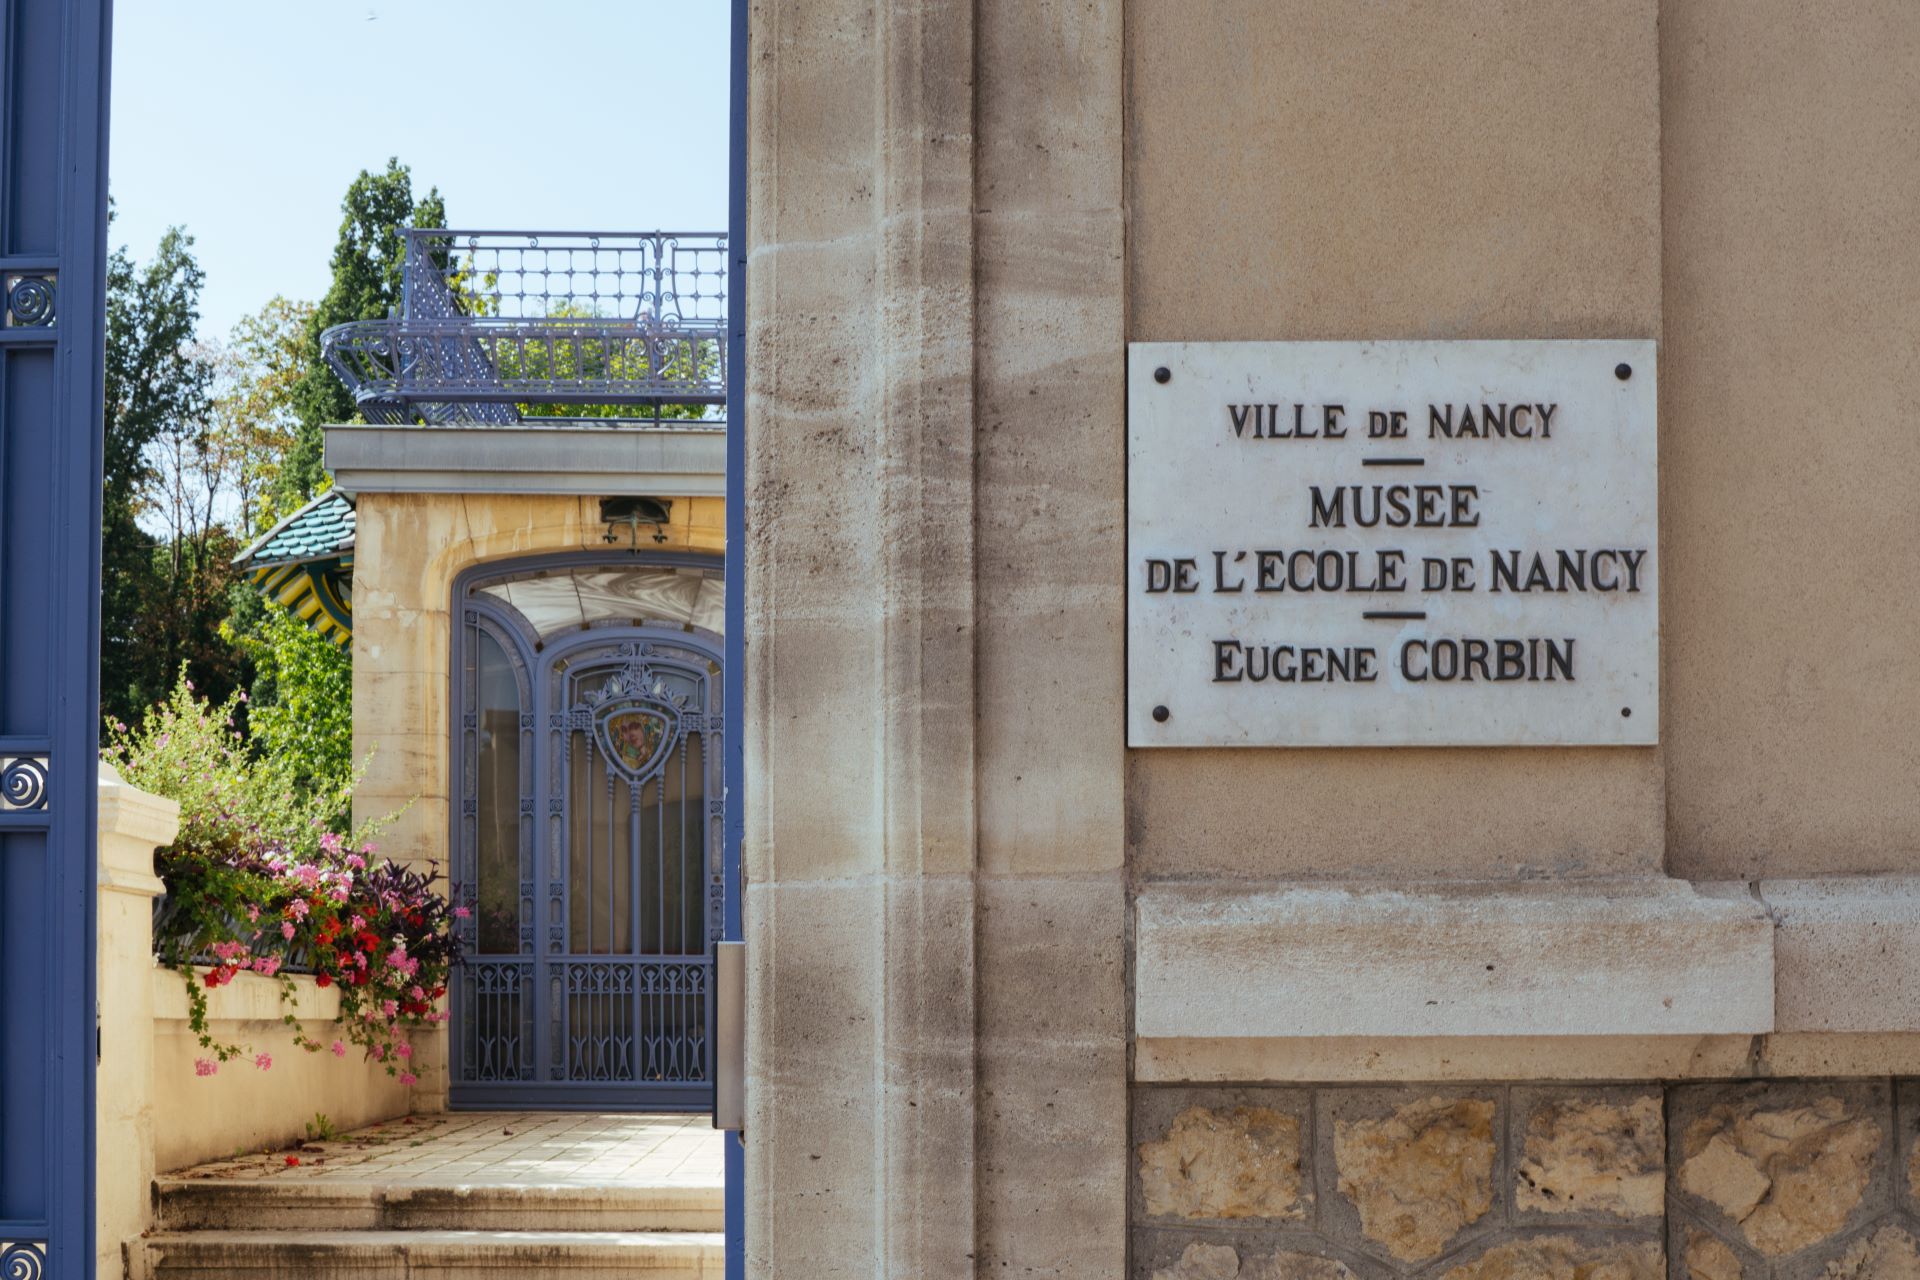 Un panneau sur une école historique de Nancy indique "Musée de l'école de Nancy" en français.